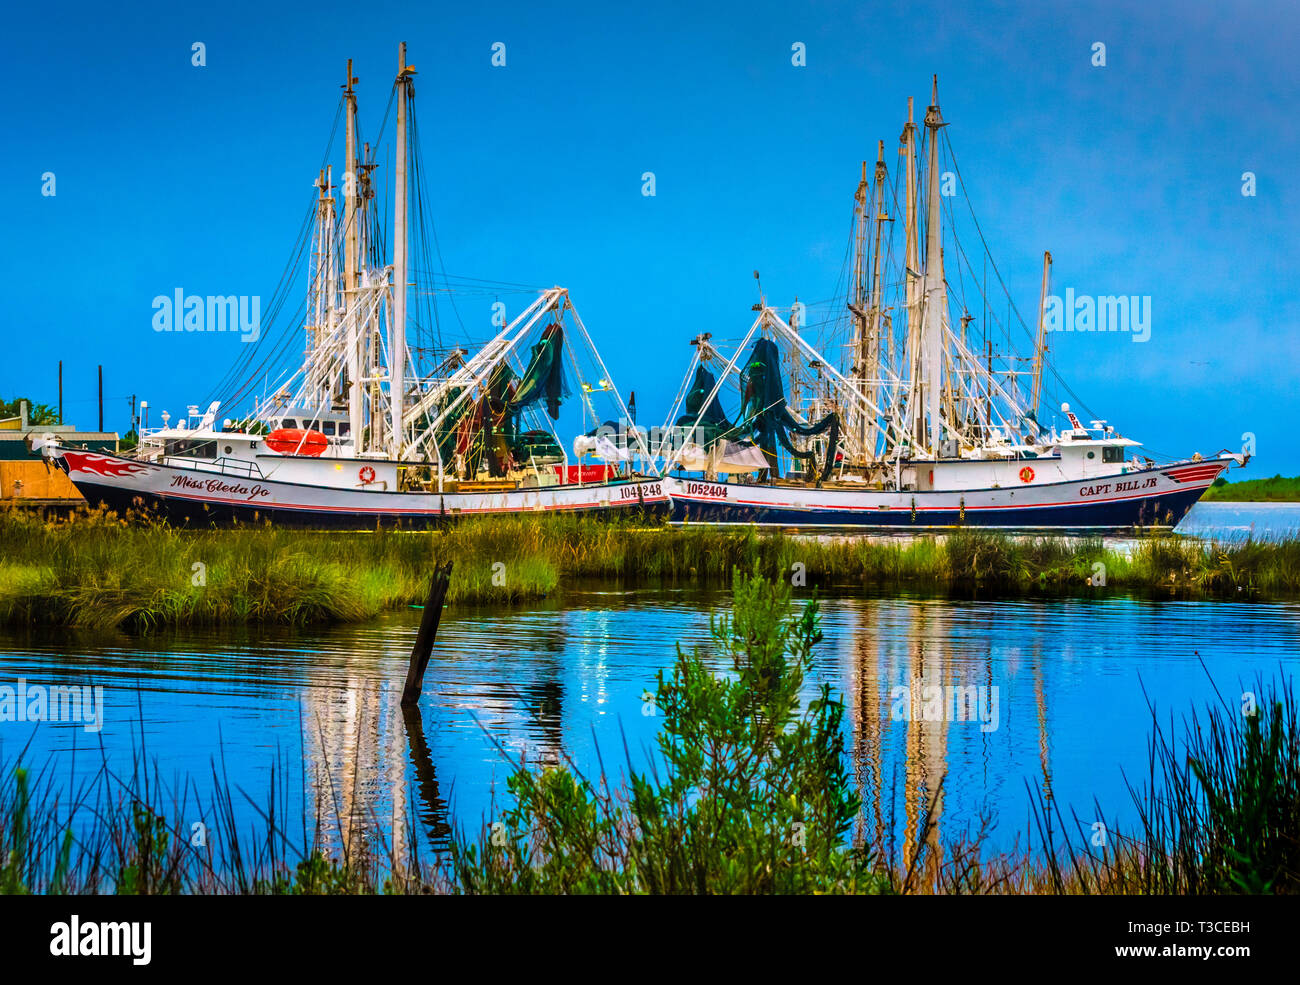 Le crépuscule descend sur deux bateaux de crevettes, Mlle Cleda Jo et le Capitaine Bill Jr., le 29 août 2014, à Bayou La Batre, Alabama. Banque D'Images